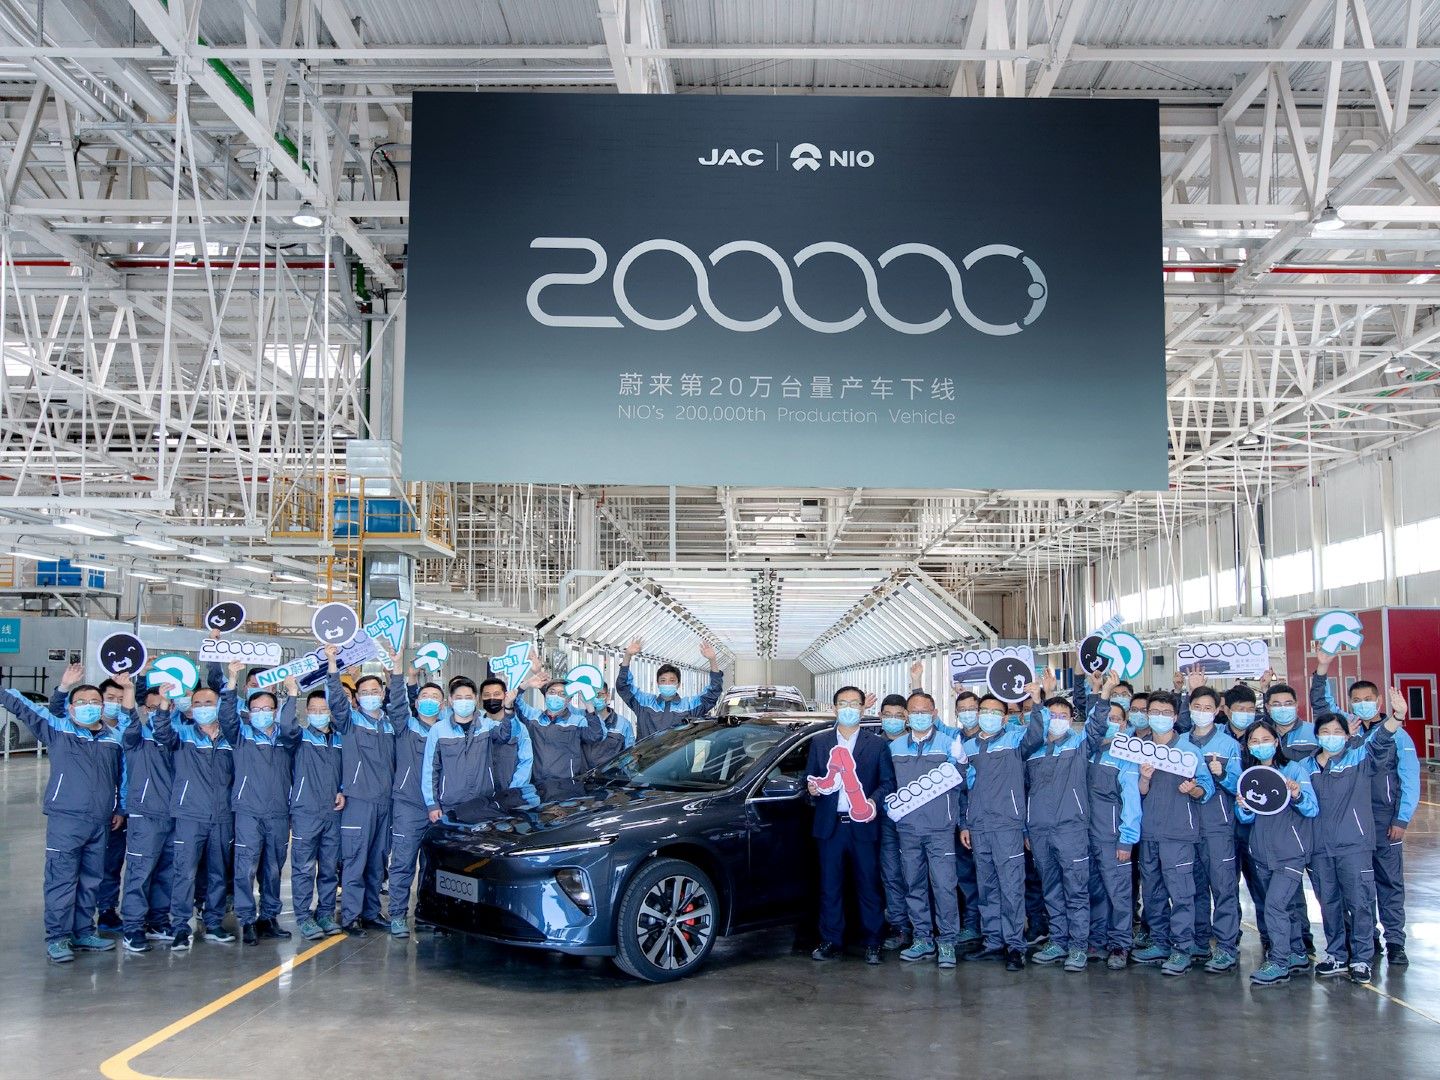 Η Nio γιορτάζει την παραγωγή 200.000 αυτοκινήτων!